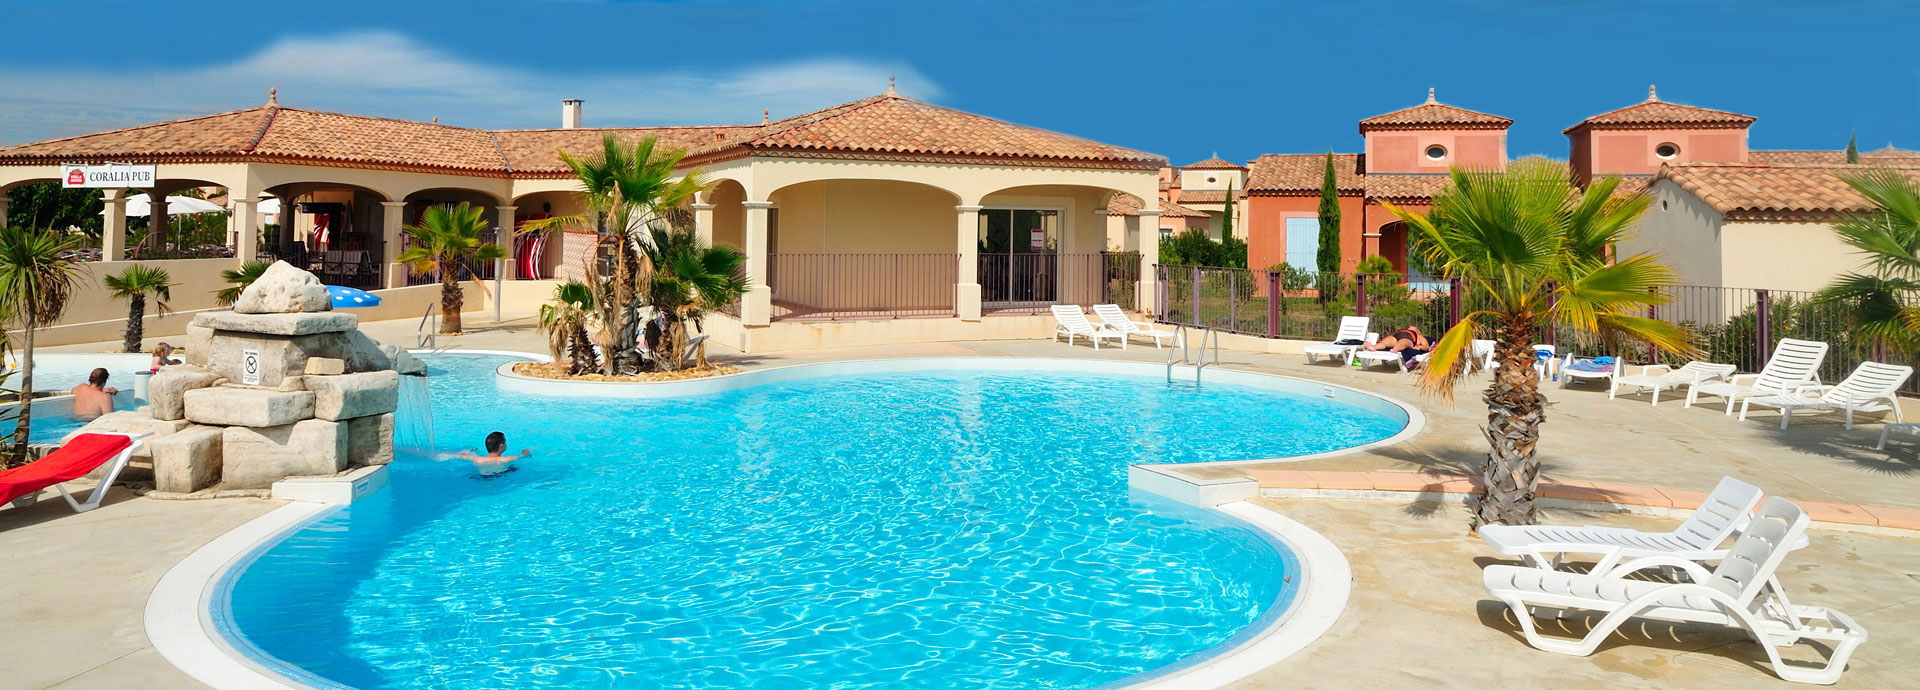 Alquiler de residencias vacaciones con piscina : Coralia vacances 